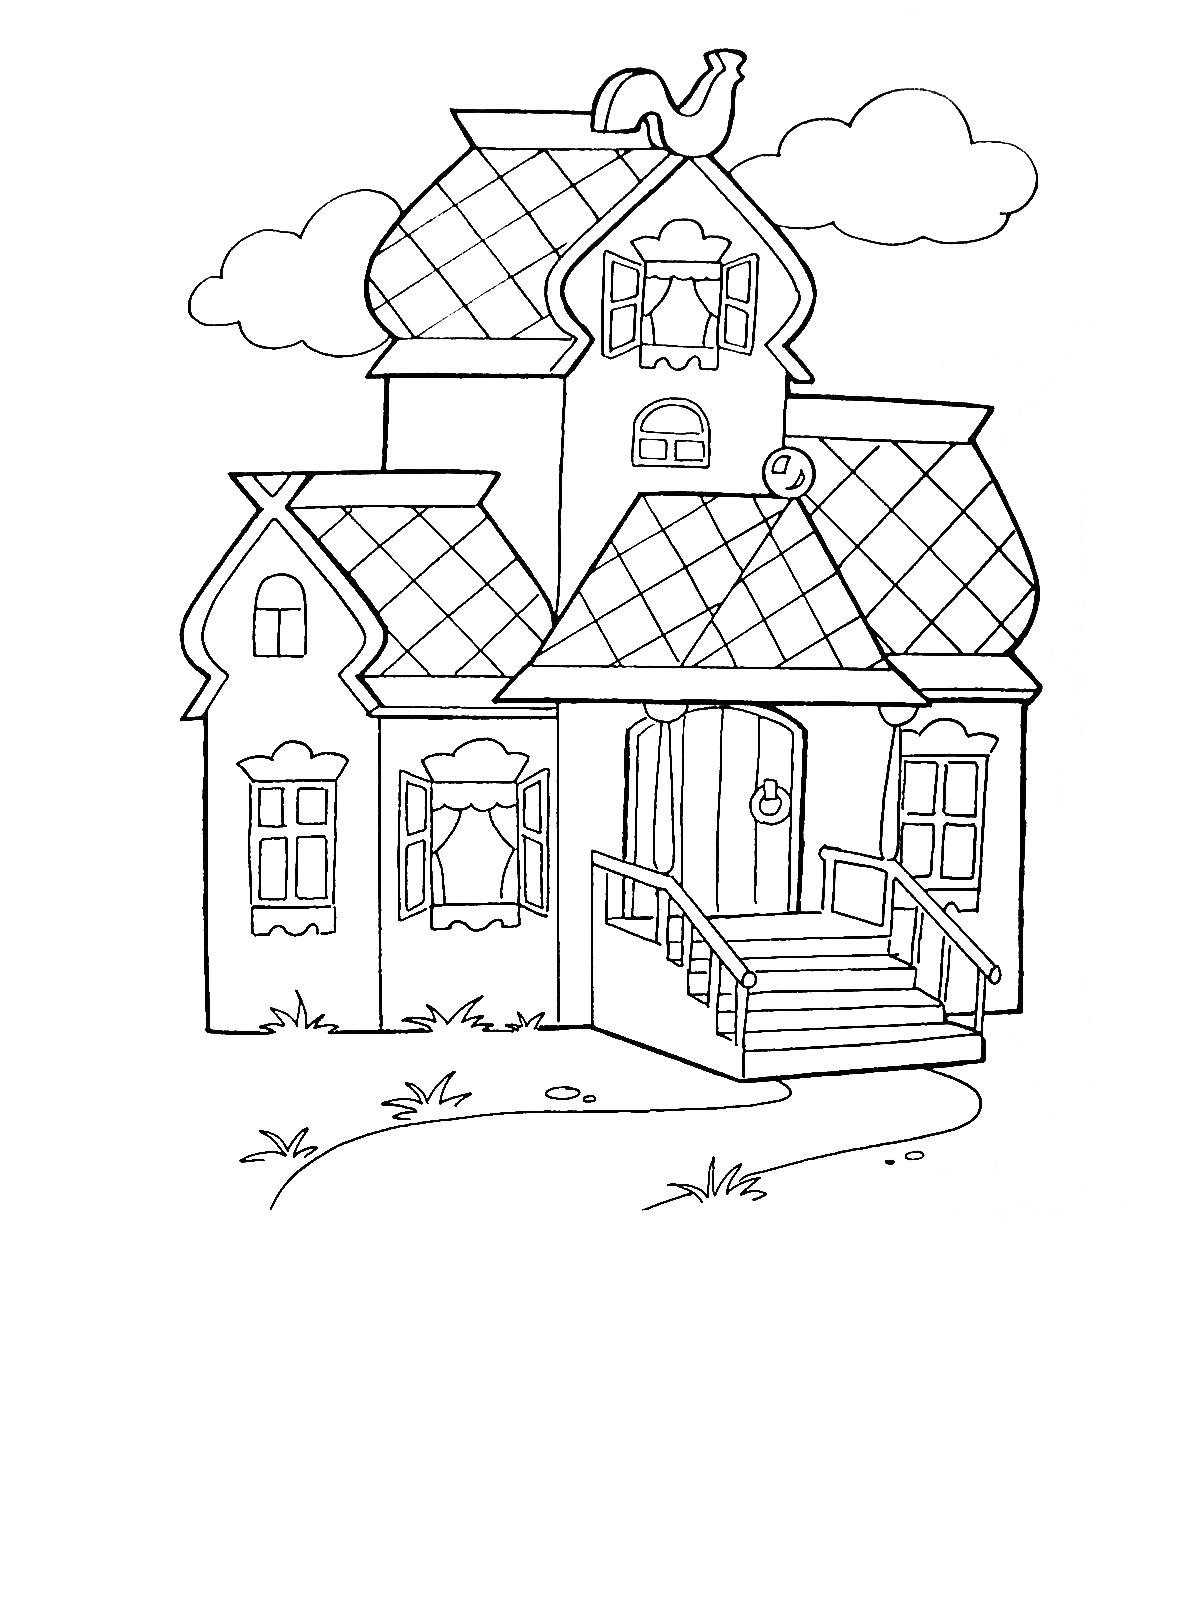 Теремок с петухом на крыше, окном на чердаке, крыльцом с перилами и тремя окнами.